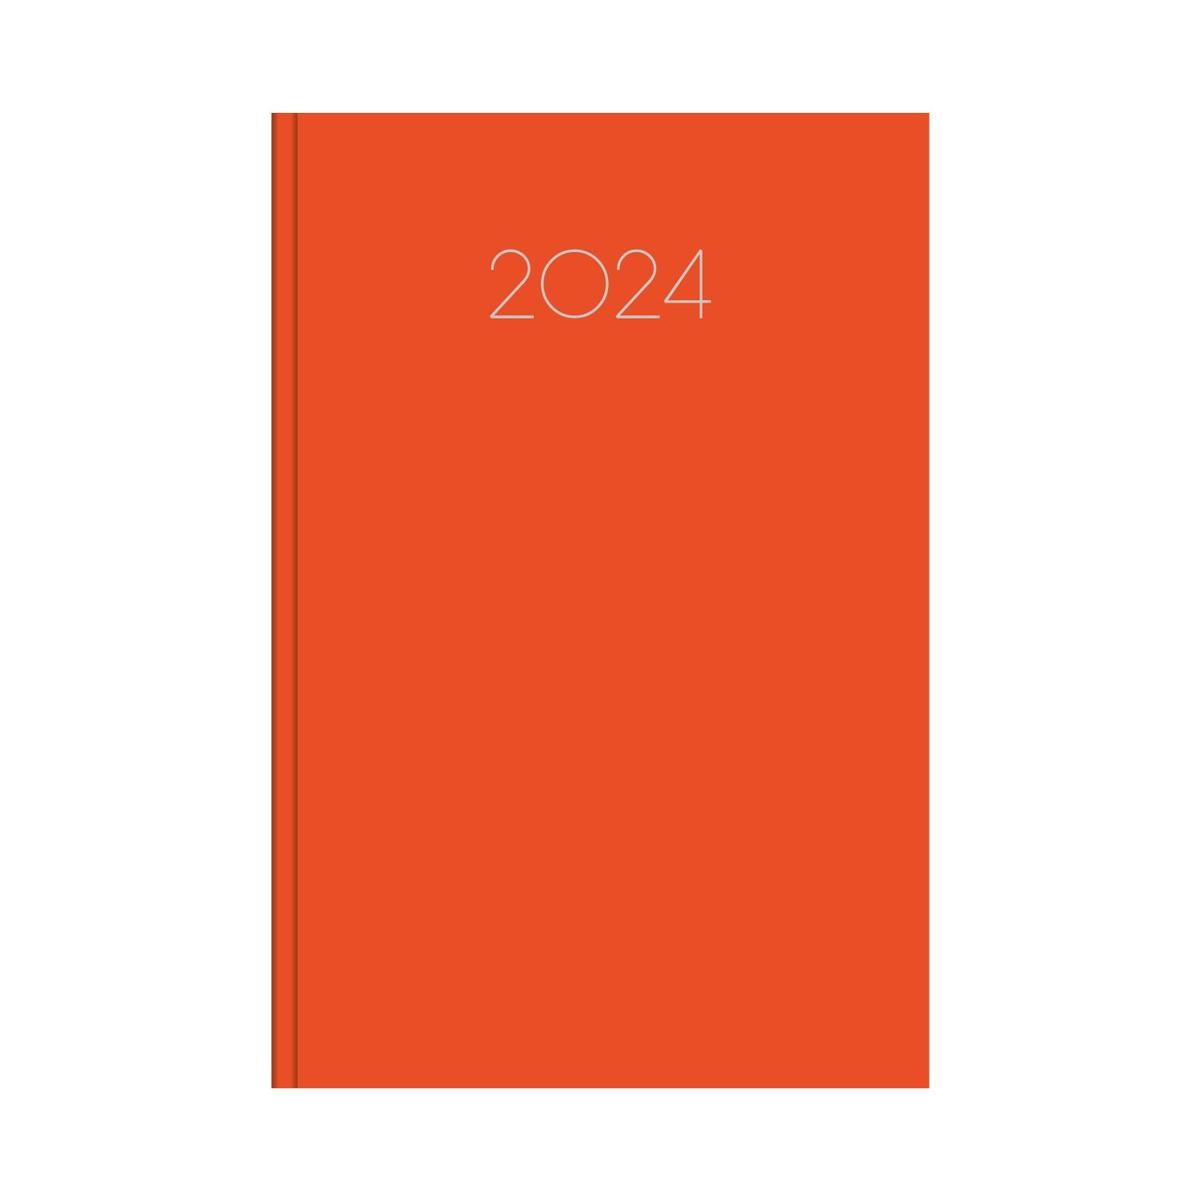 Ημερήσιο ημερολόγιο 2024 simple πορτοκαλί 17 x 25 cm